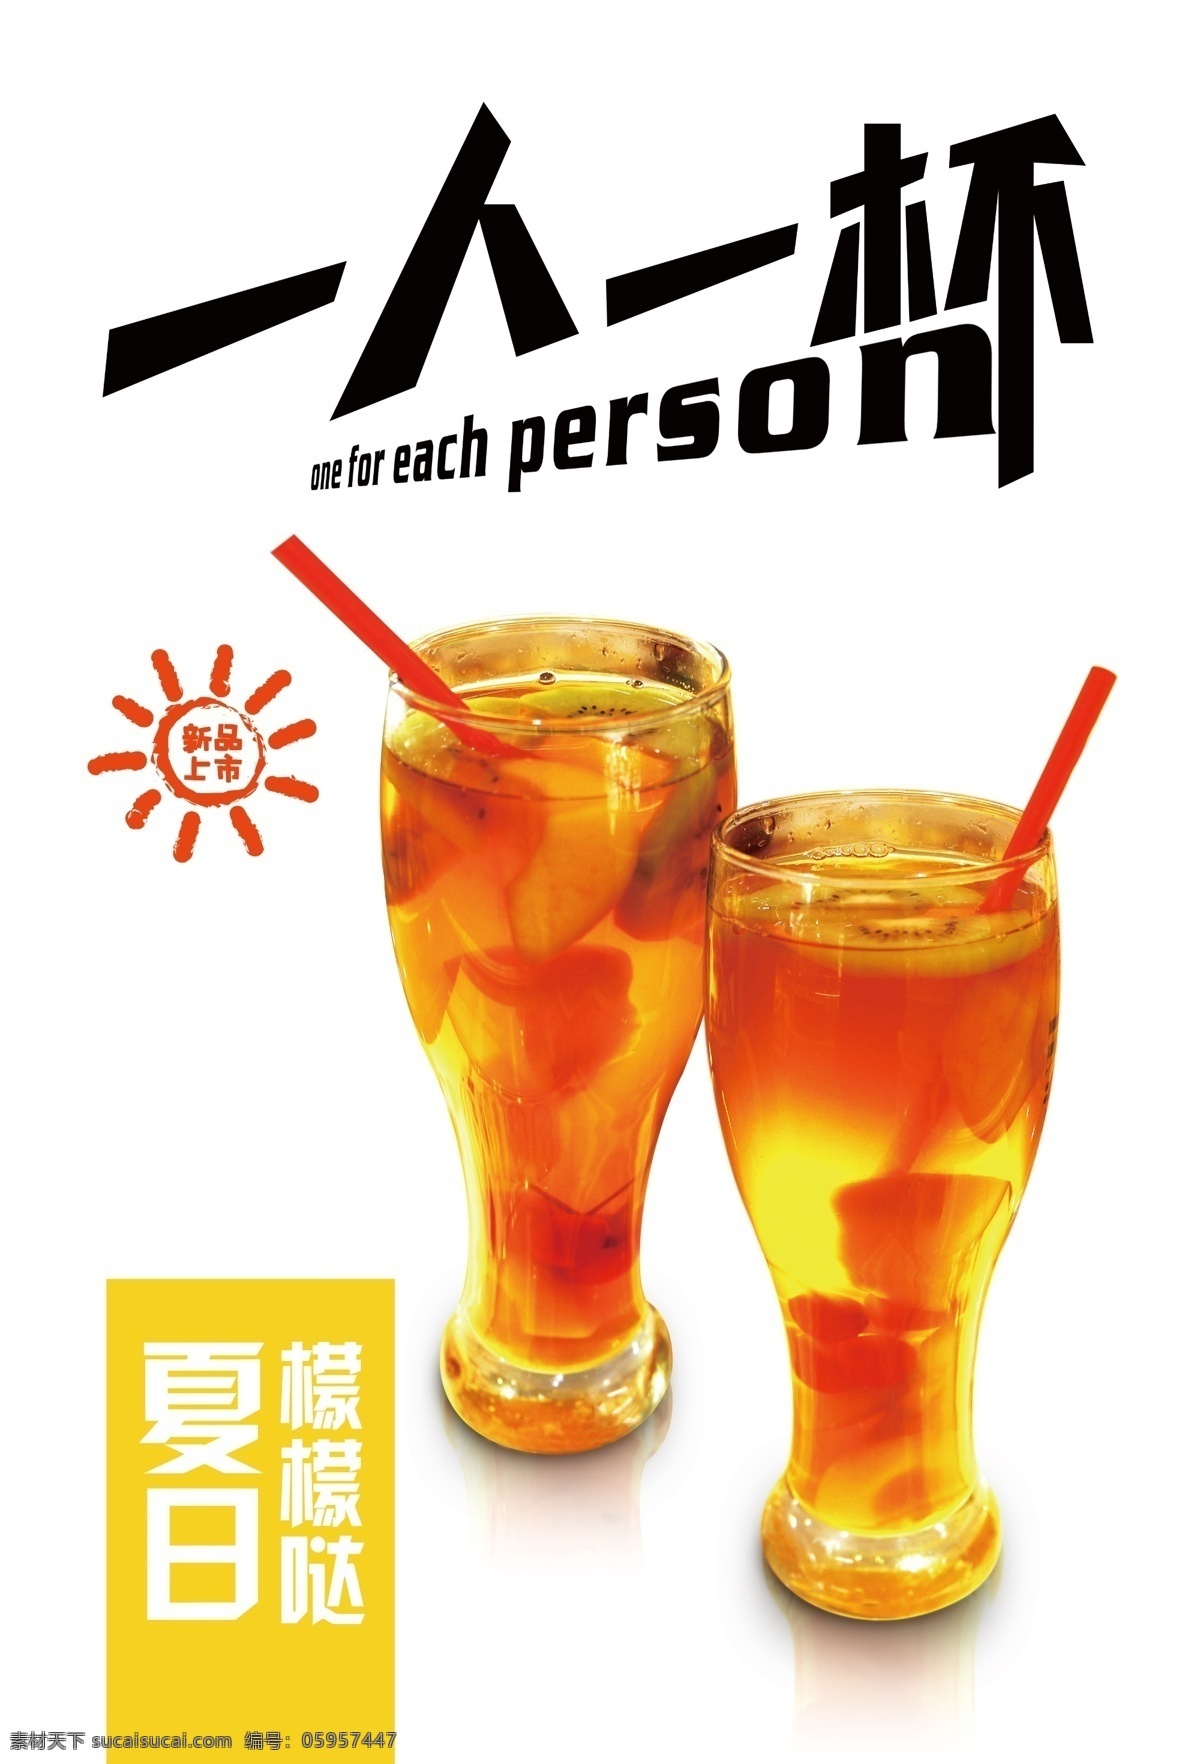 饮料 水吧 海报 宣传单 一人一杯 第二杯半价 夏天 柠檬 冰饮 新品 新品上市 活动 活动海报 白色